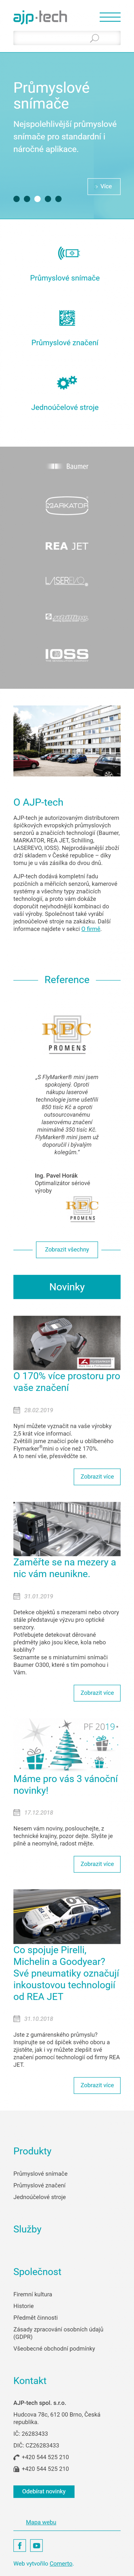 Tvorba webu ajptech.cz - Screenshot mobilní verze